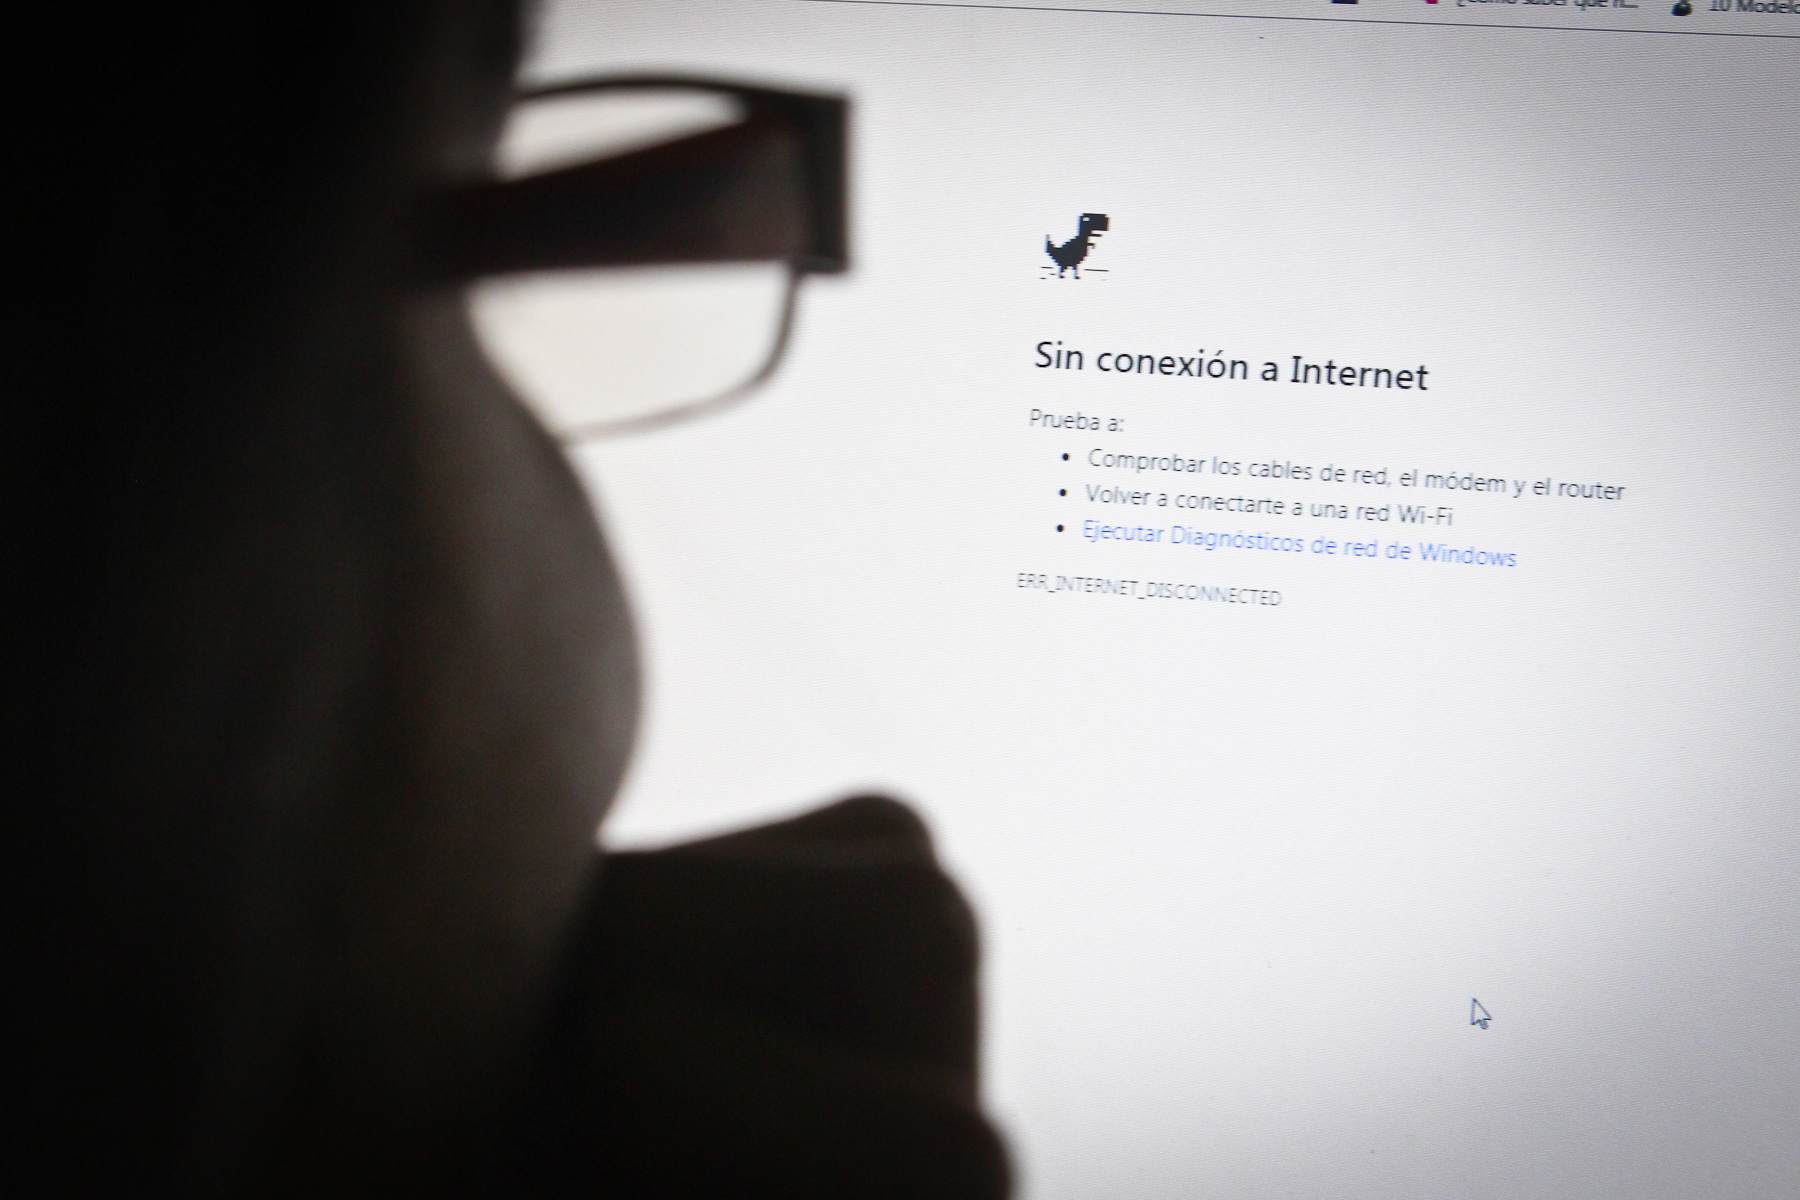 acceso a internet presenta muchas fallas en Venezuela